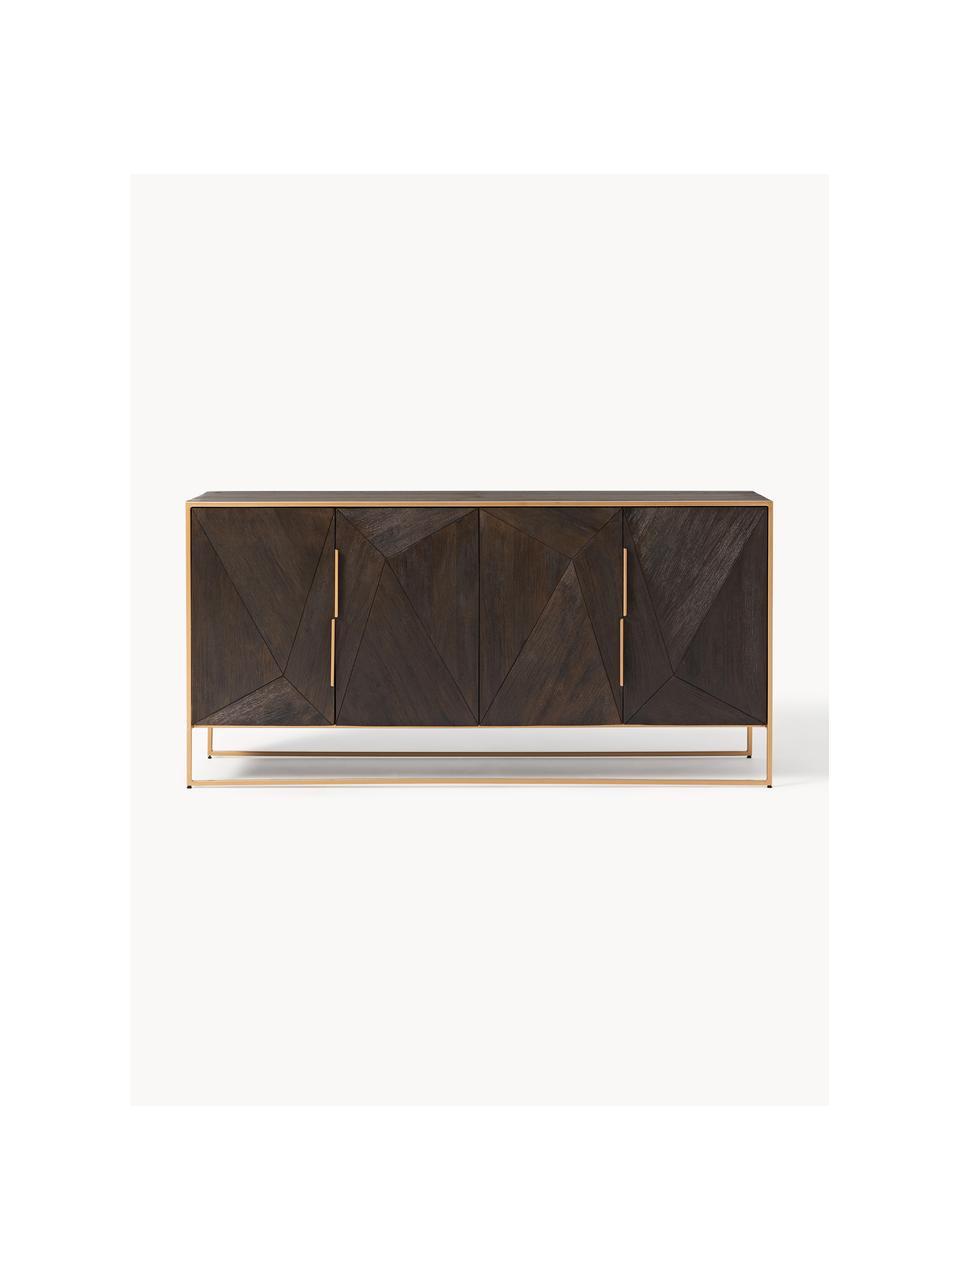 Sideboard Harry mit Türen aus massivem Mangoholz, Korpus: Massives Mangoholz, lacki, Mangoholz, Goldfarben, B 175 x H 85 cm